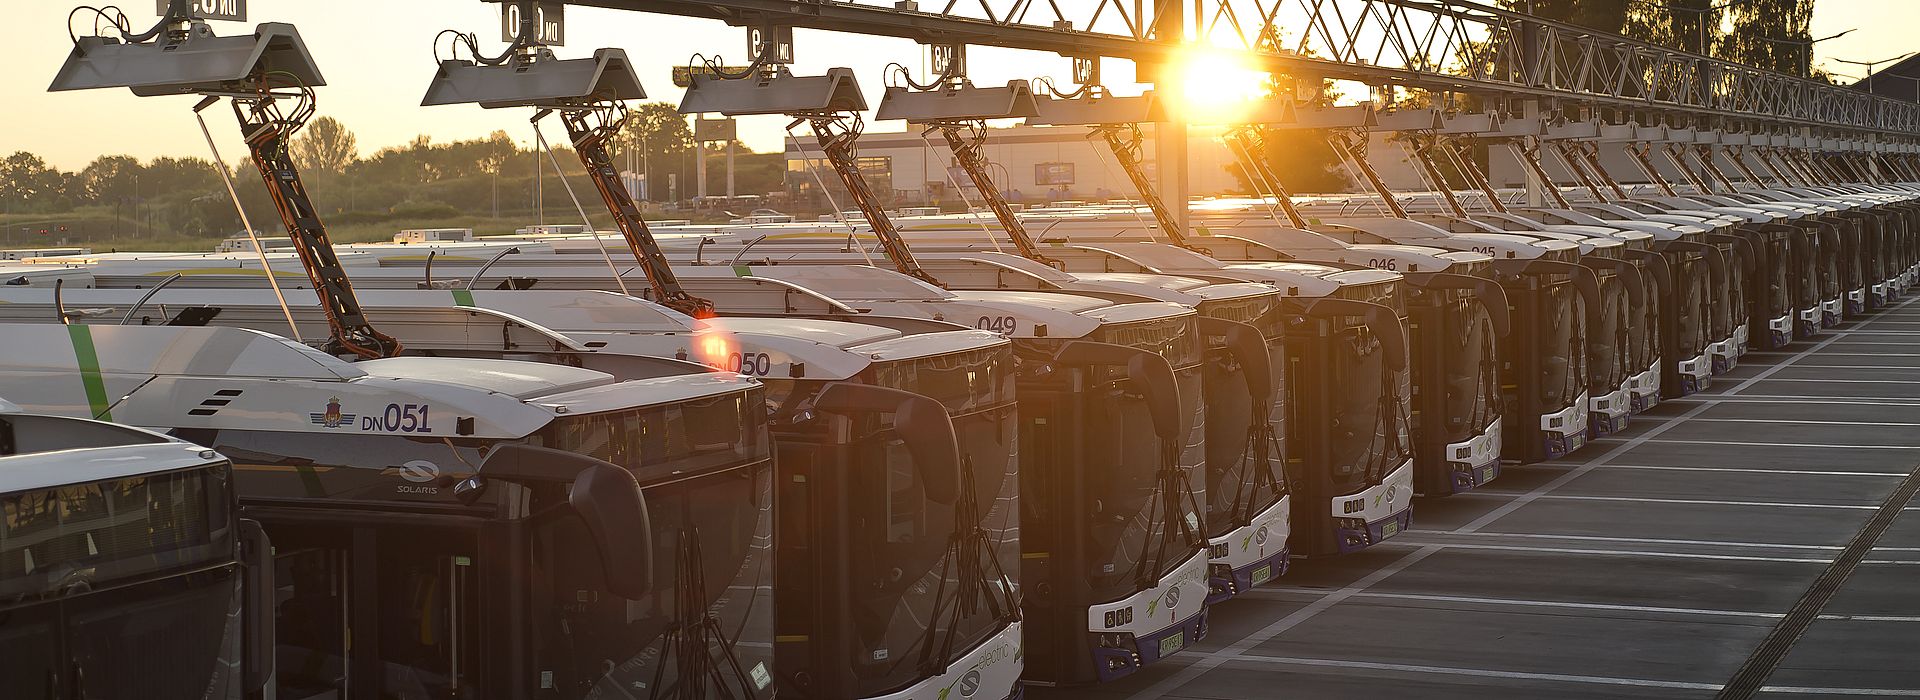 electric-bus-fleet-in-krakow